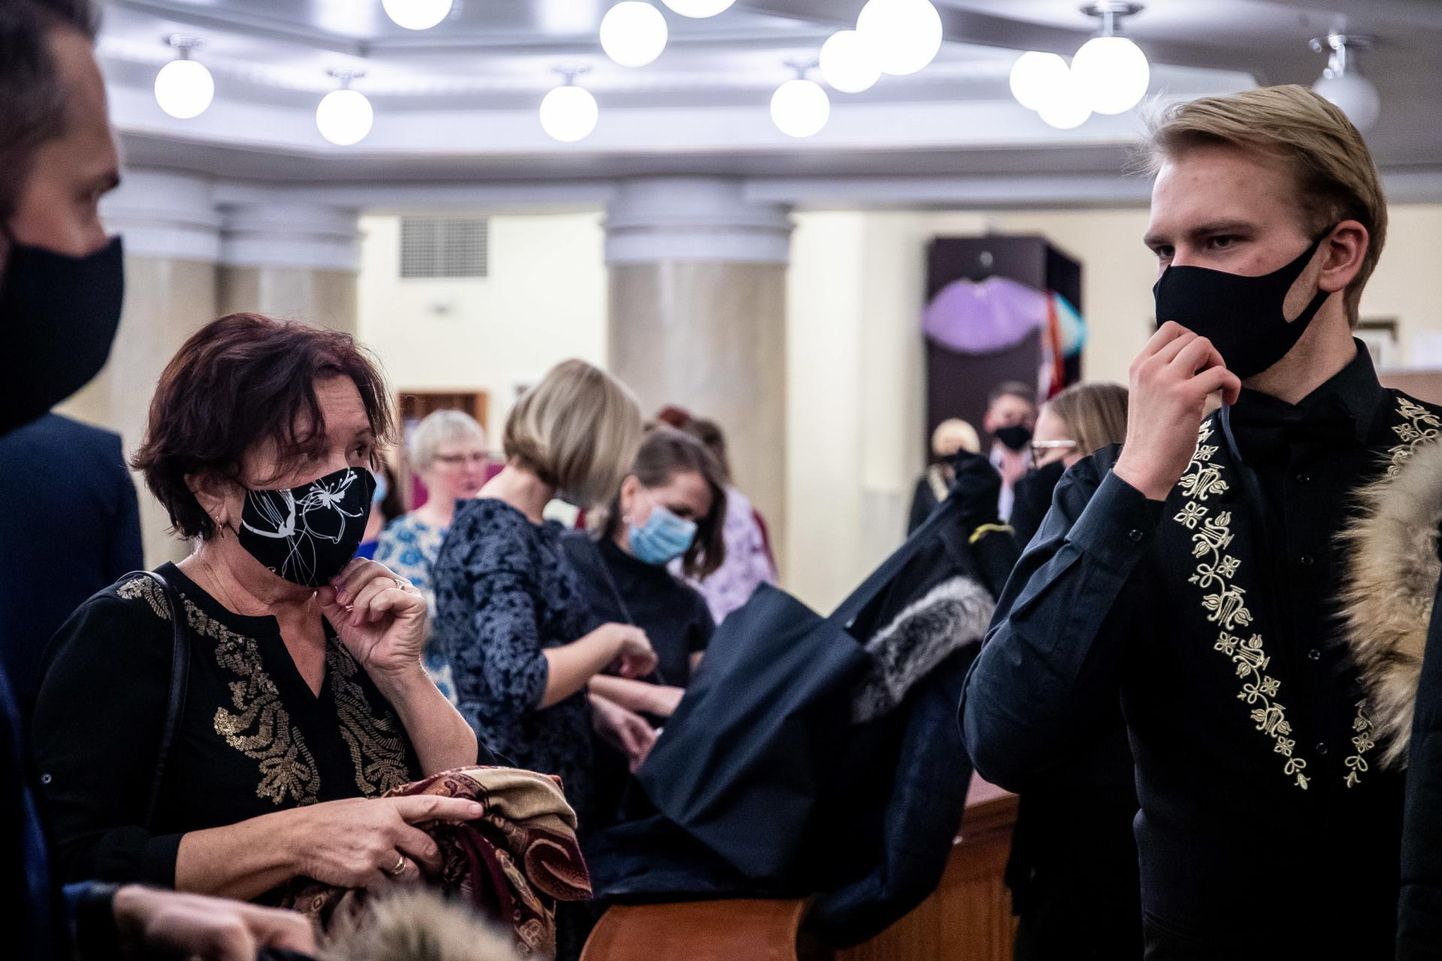 Вчера в театре "Эстония" публика была в масках, люди старались соблюдать дистанцию друг с другом.